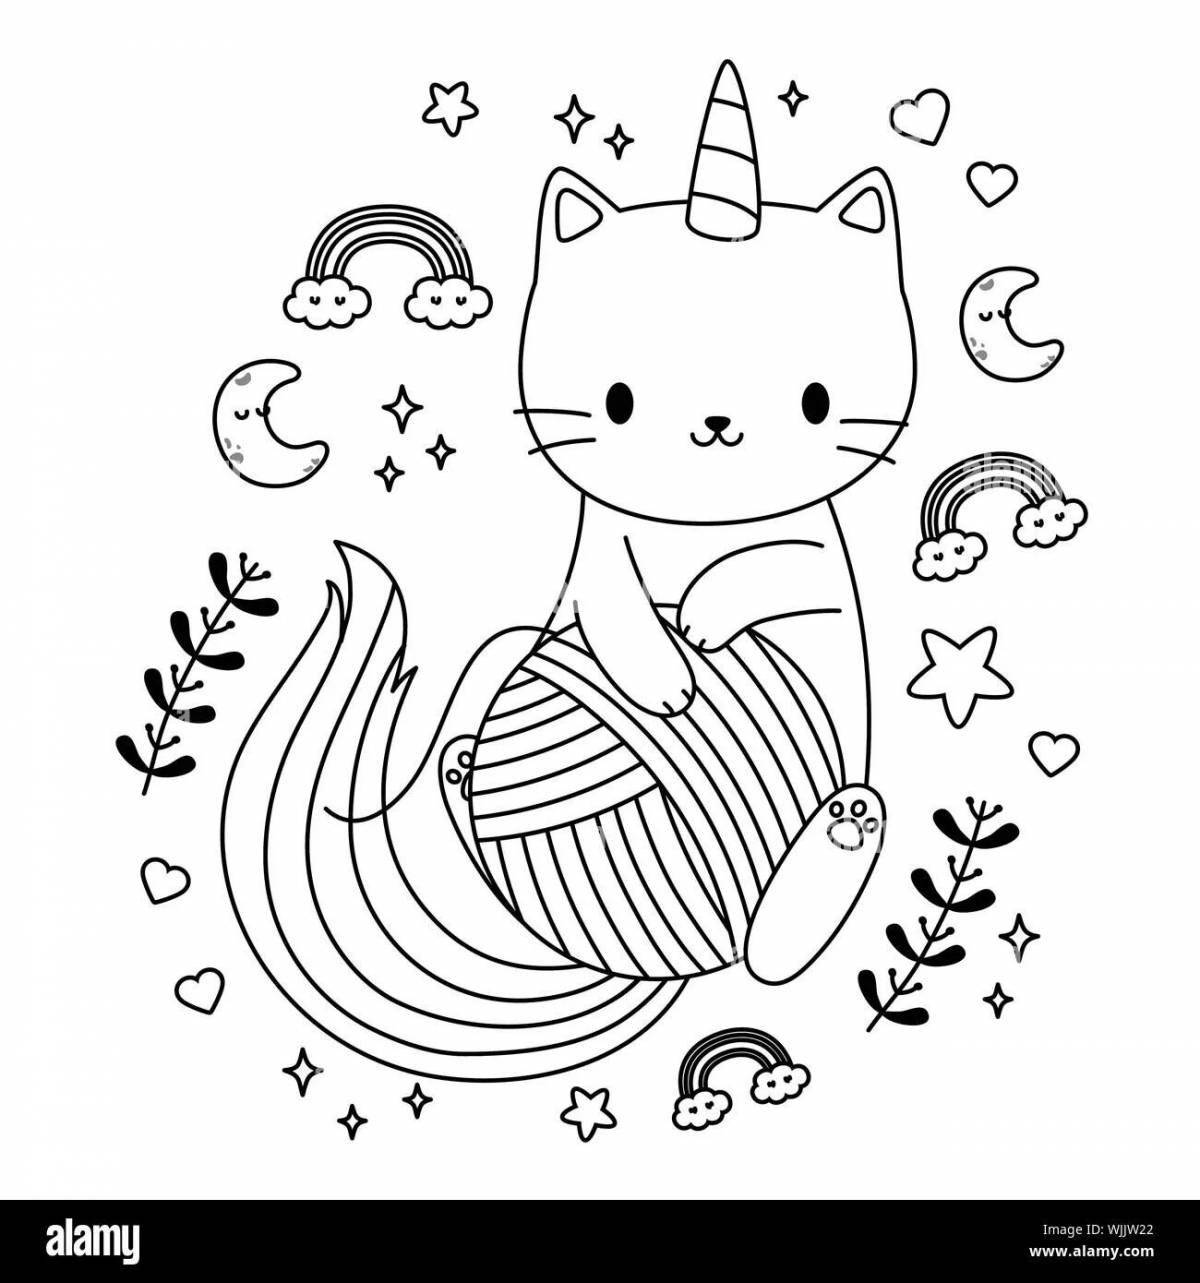 Яркая раскраска радужный кот-единорог